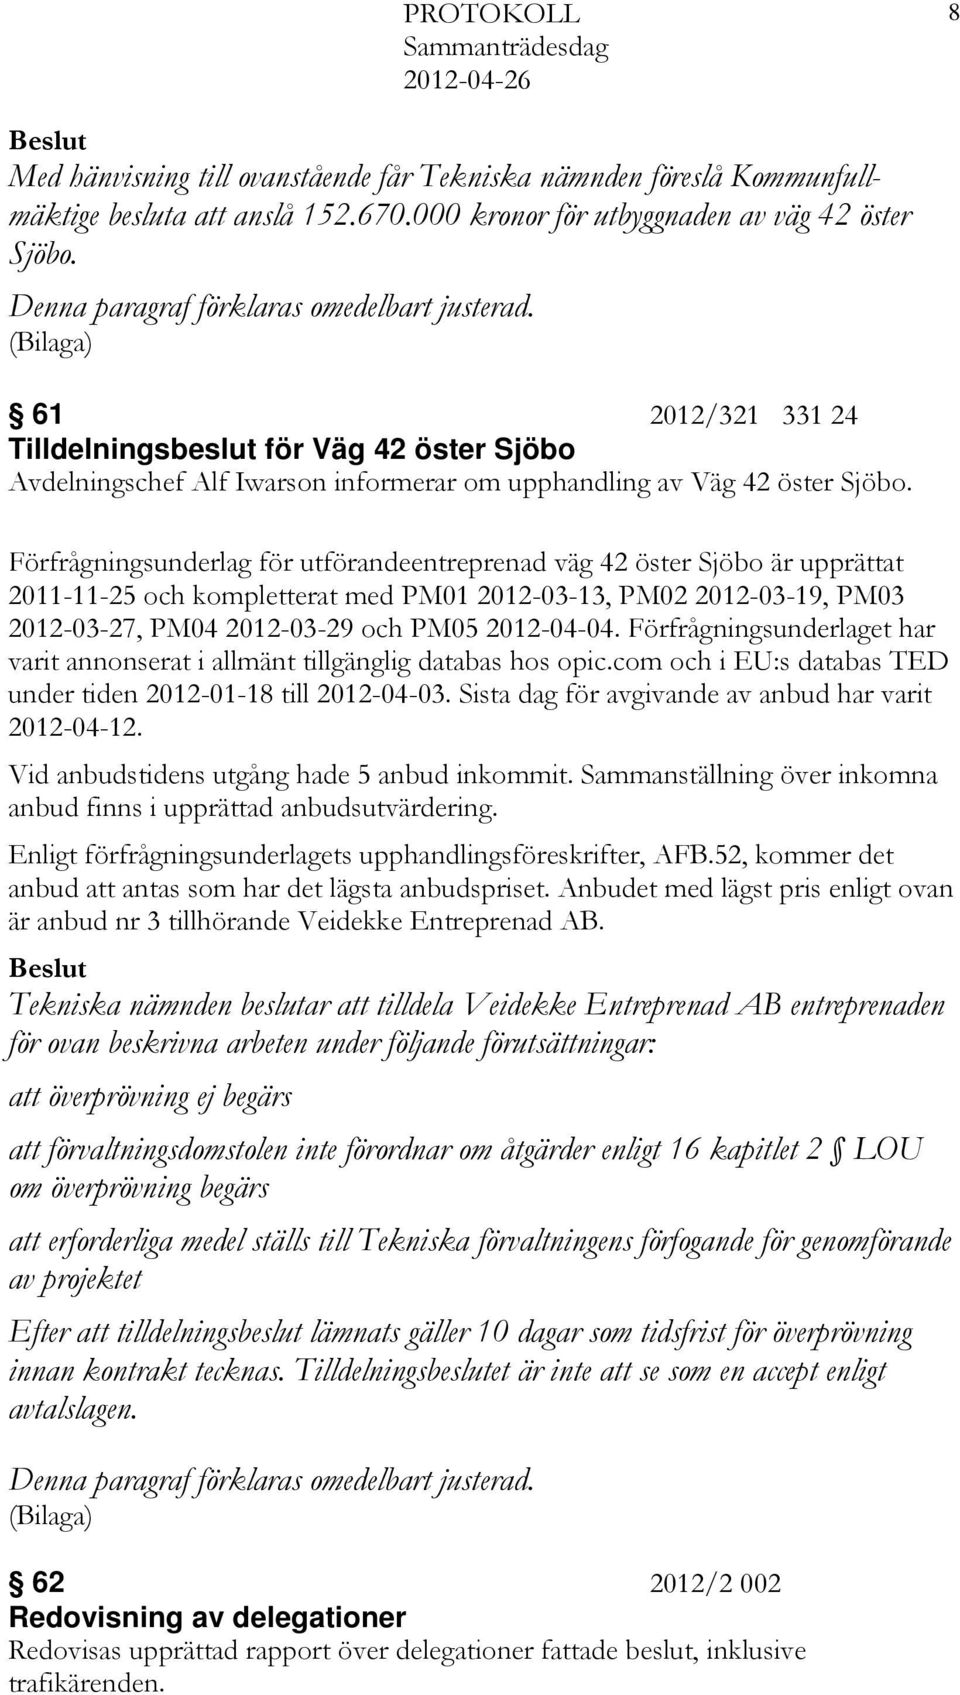 Förfrågningsunderlag för utförandeentreprenad väg 42 öster Sjöbo är upprättat 2011-11-25 och kompletterat med PM01 2012-03-13, PM02 2012-03-19, PM03 2012-03-27, PM04 2012-03-29 och PM05 2012-04-04.